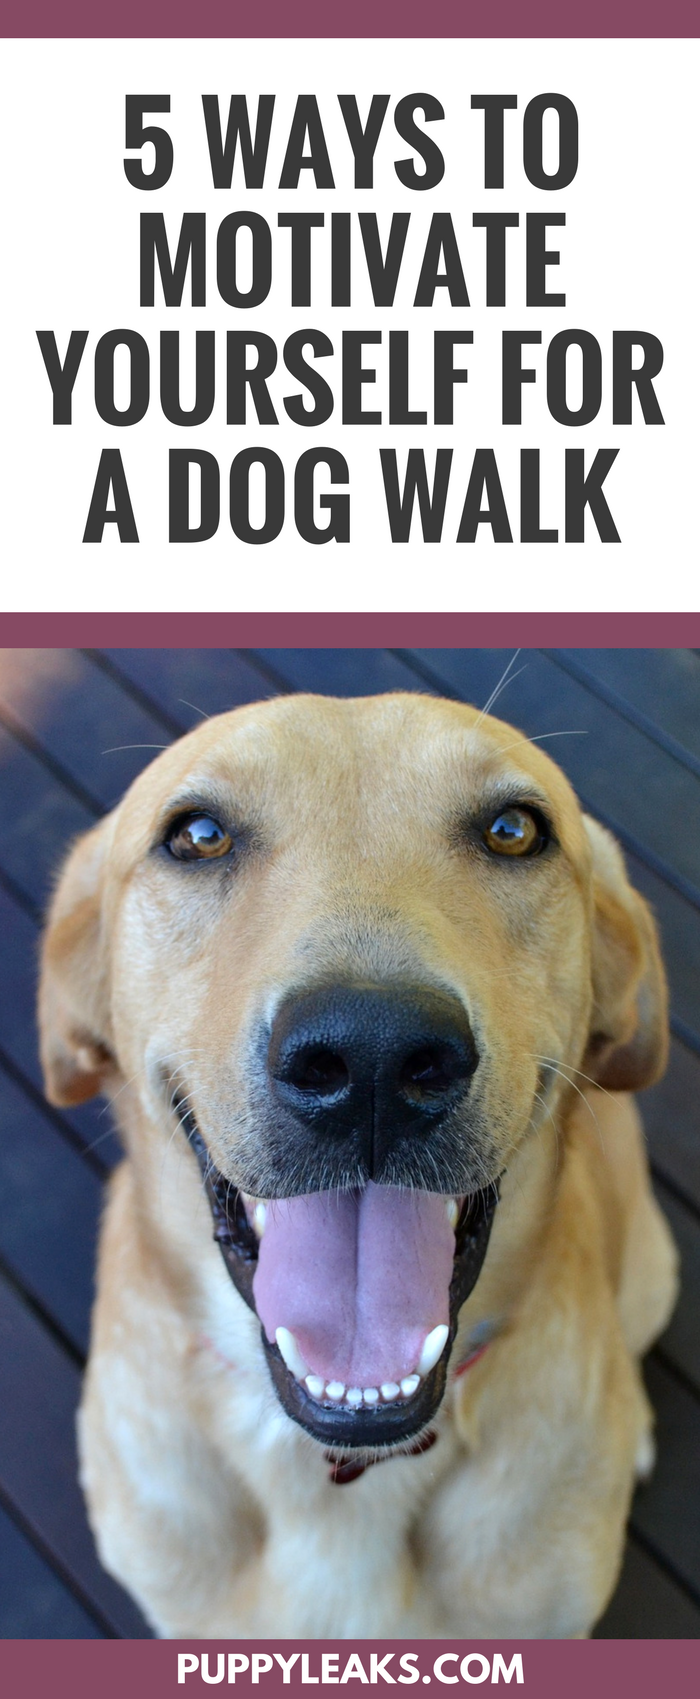 5 maneiras de se motivar para um passeio de cachorro